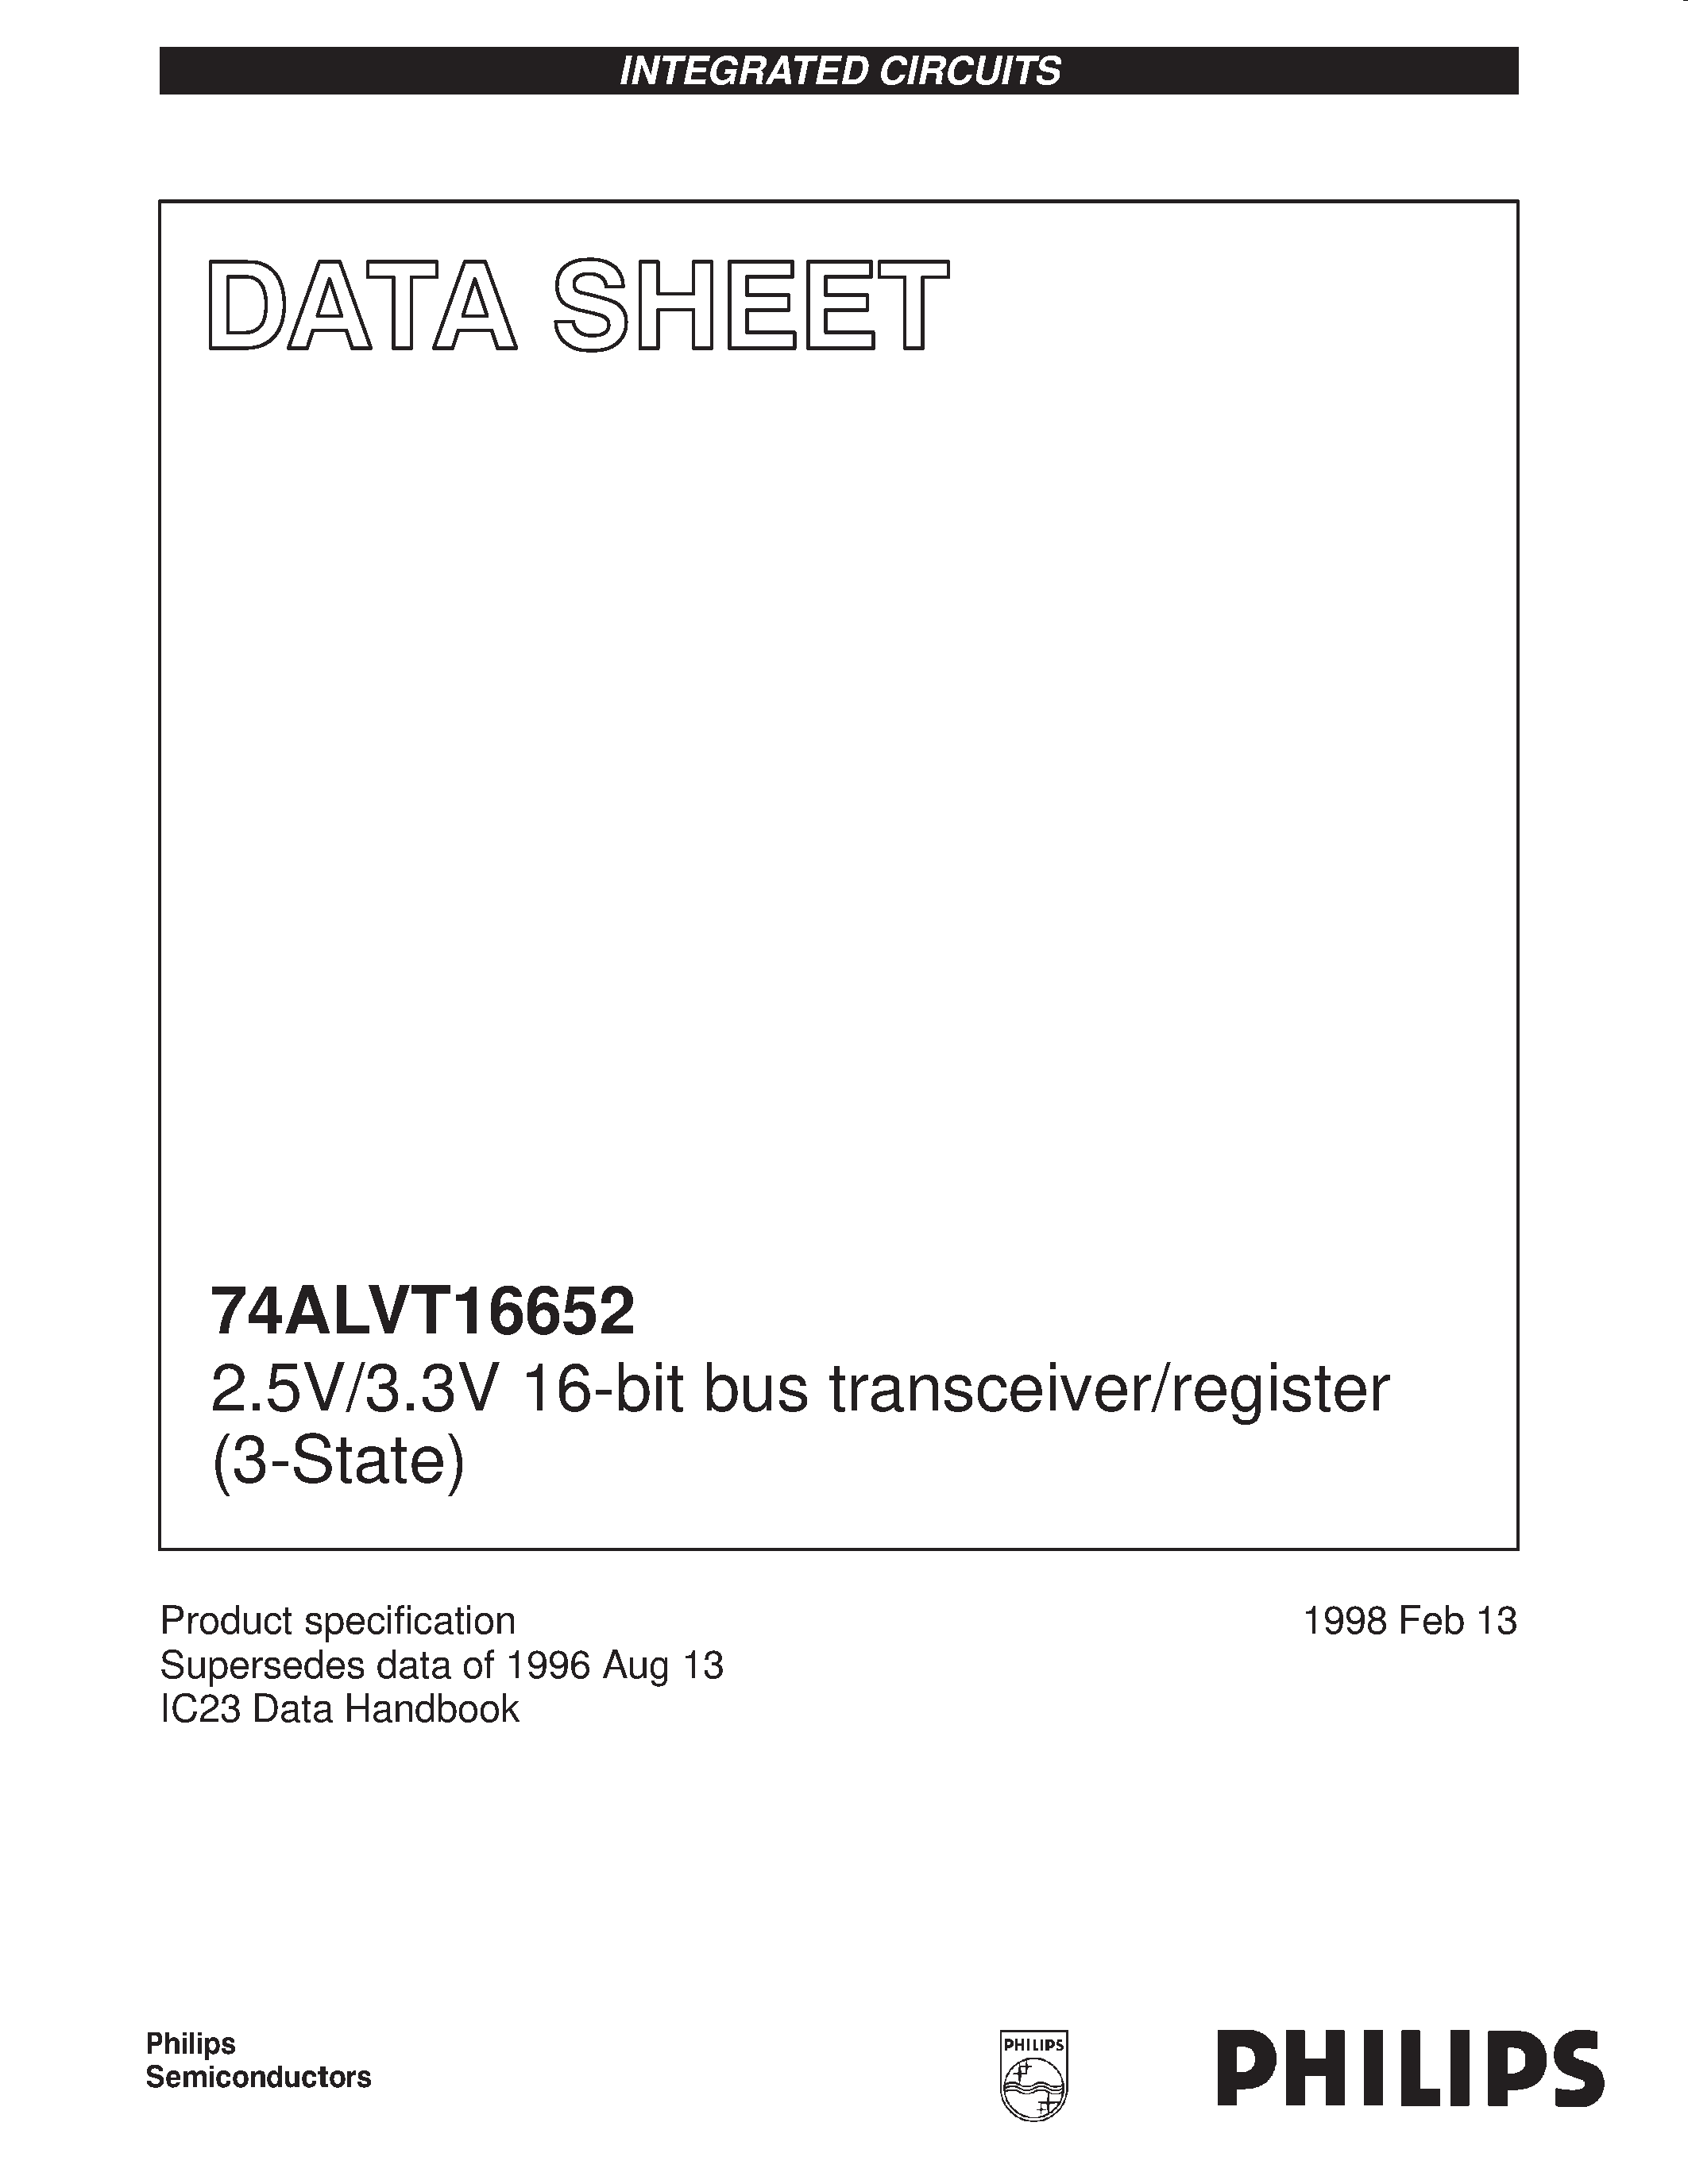 Даташит 74ALVT16652DL - 2.5V/3.3V 16-bit bus transceiver/register 3-State страница 1